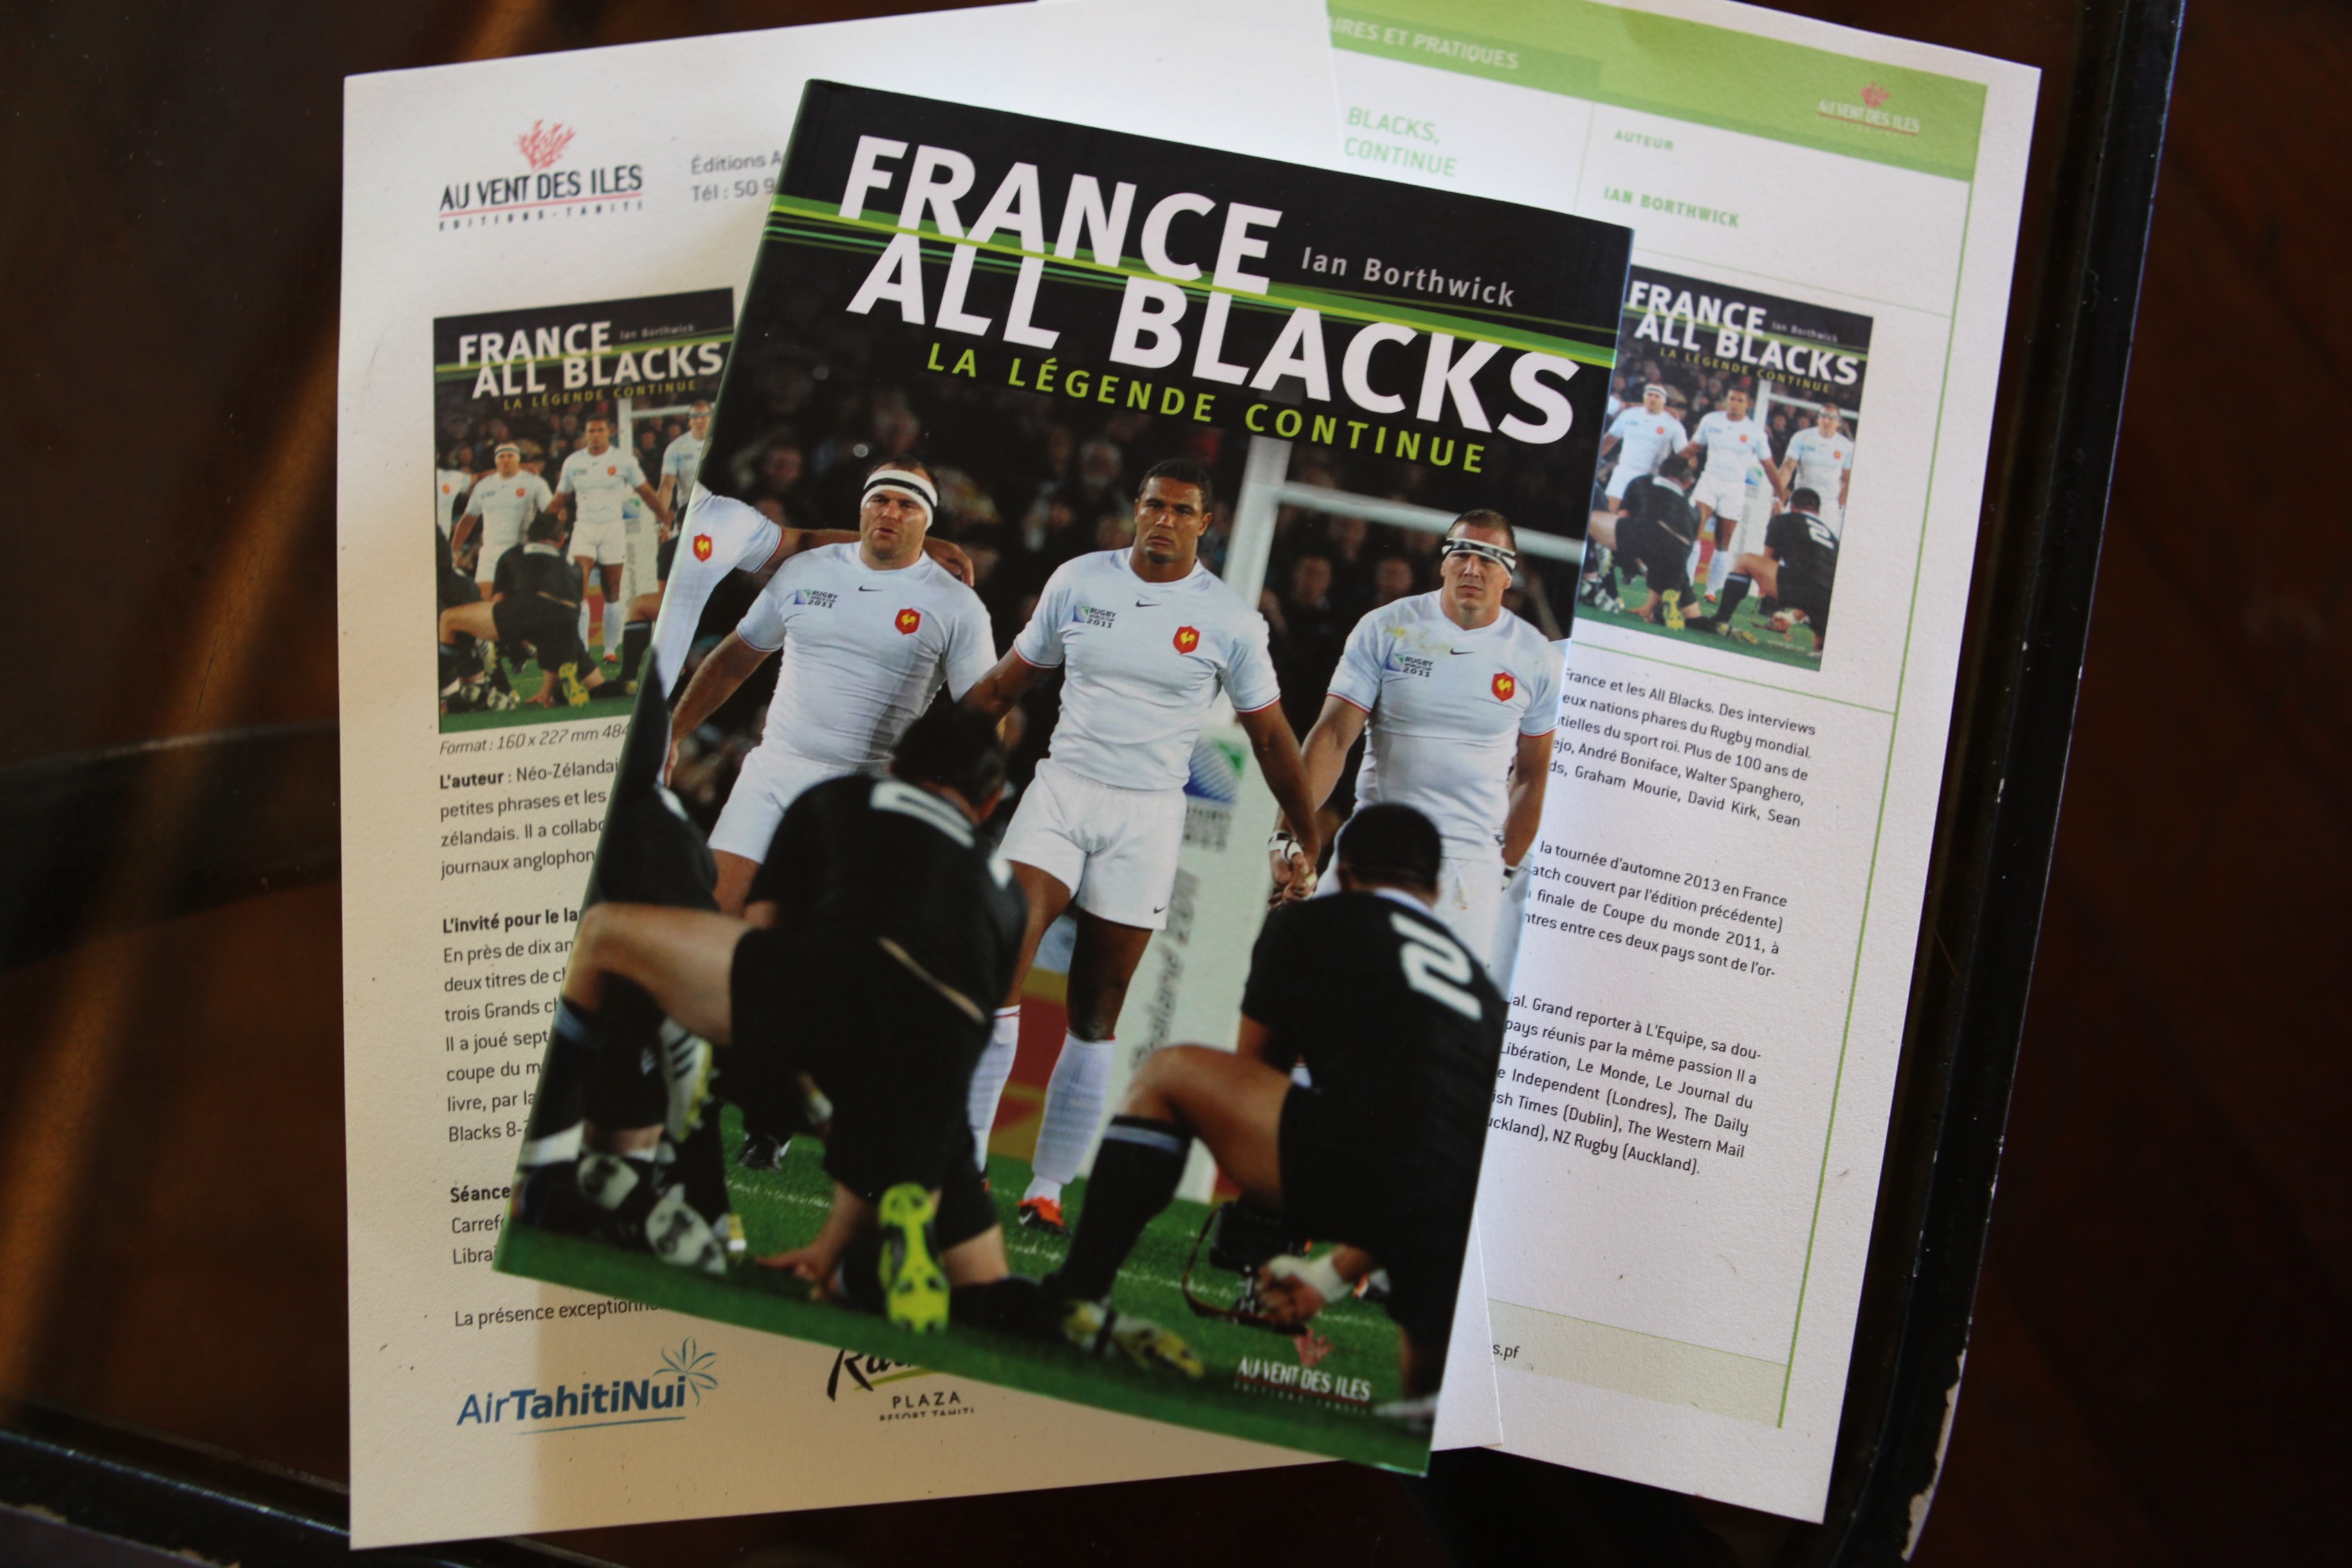 Rugby – rencontre avec Imanol Harinordoquy du XV de France, pour la réédition du livre ‘France-All Blacks’